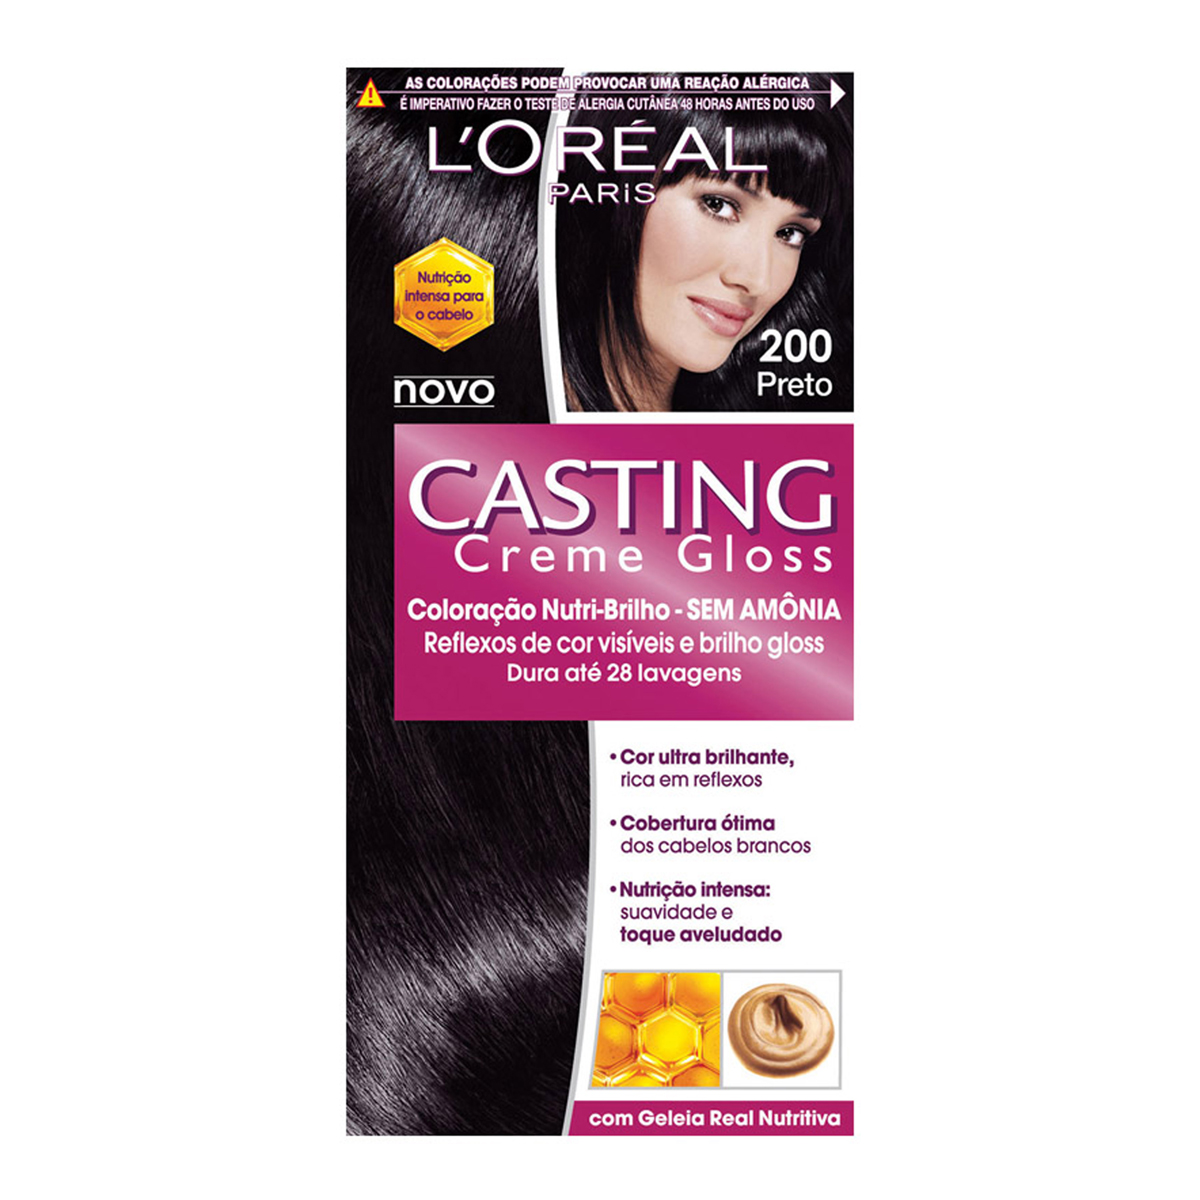 Coloração Permanente Casting Creme Gloss N° 200 Preto L'Oréal 1 Unidade